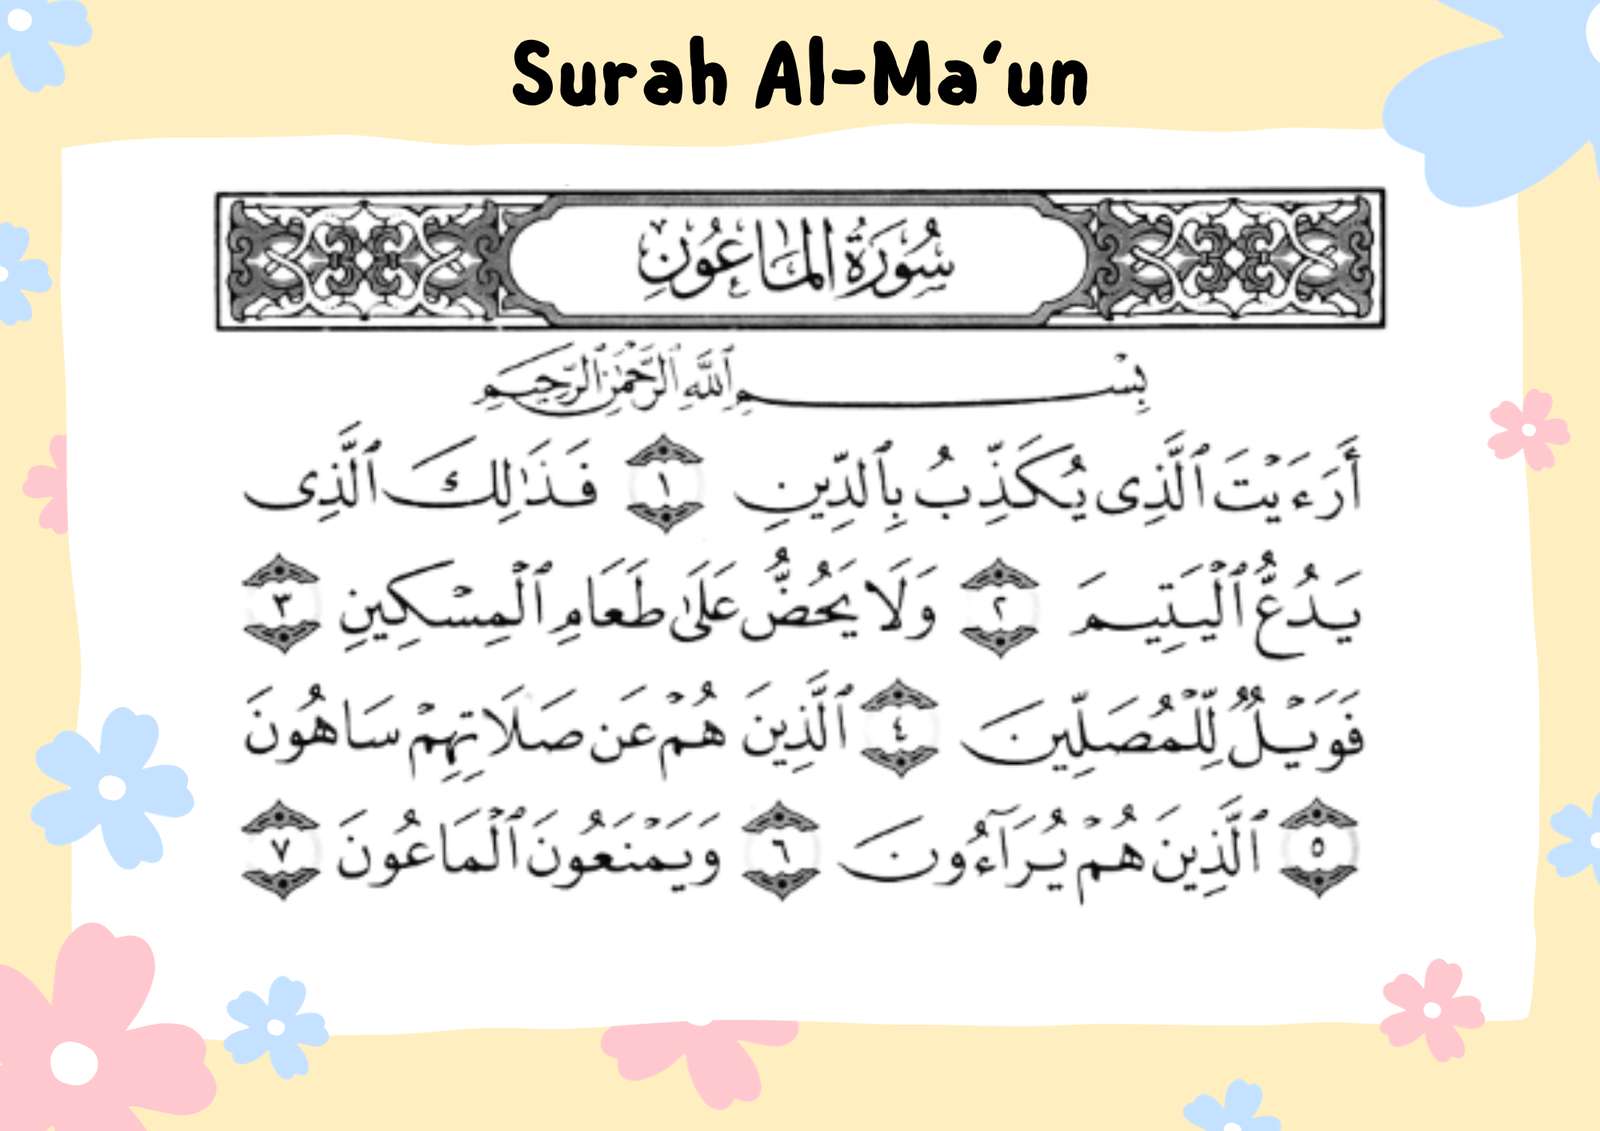 Surah Al-Ma'un online puzzle